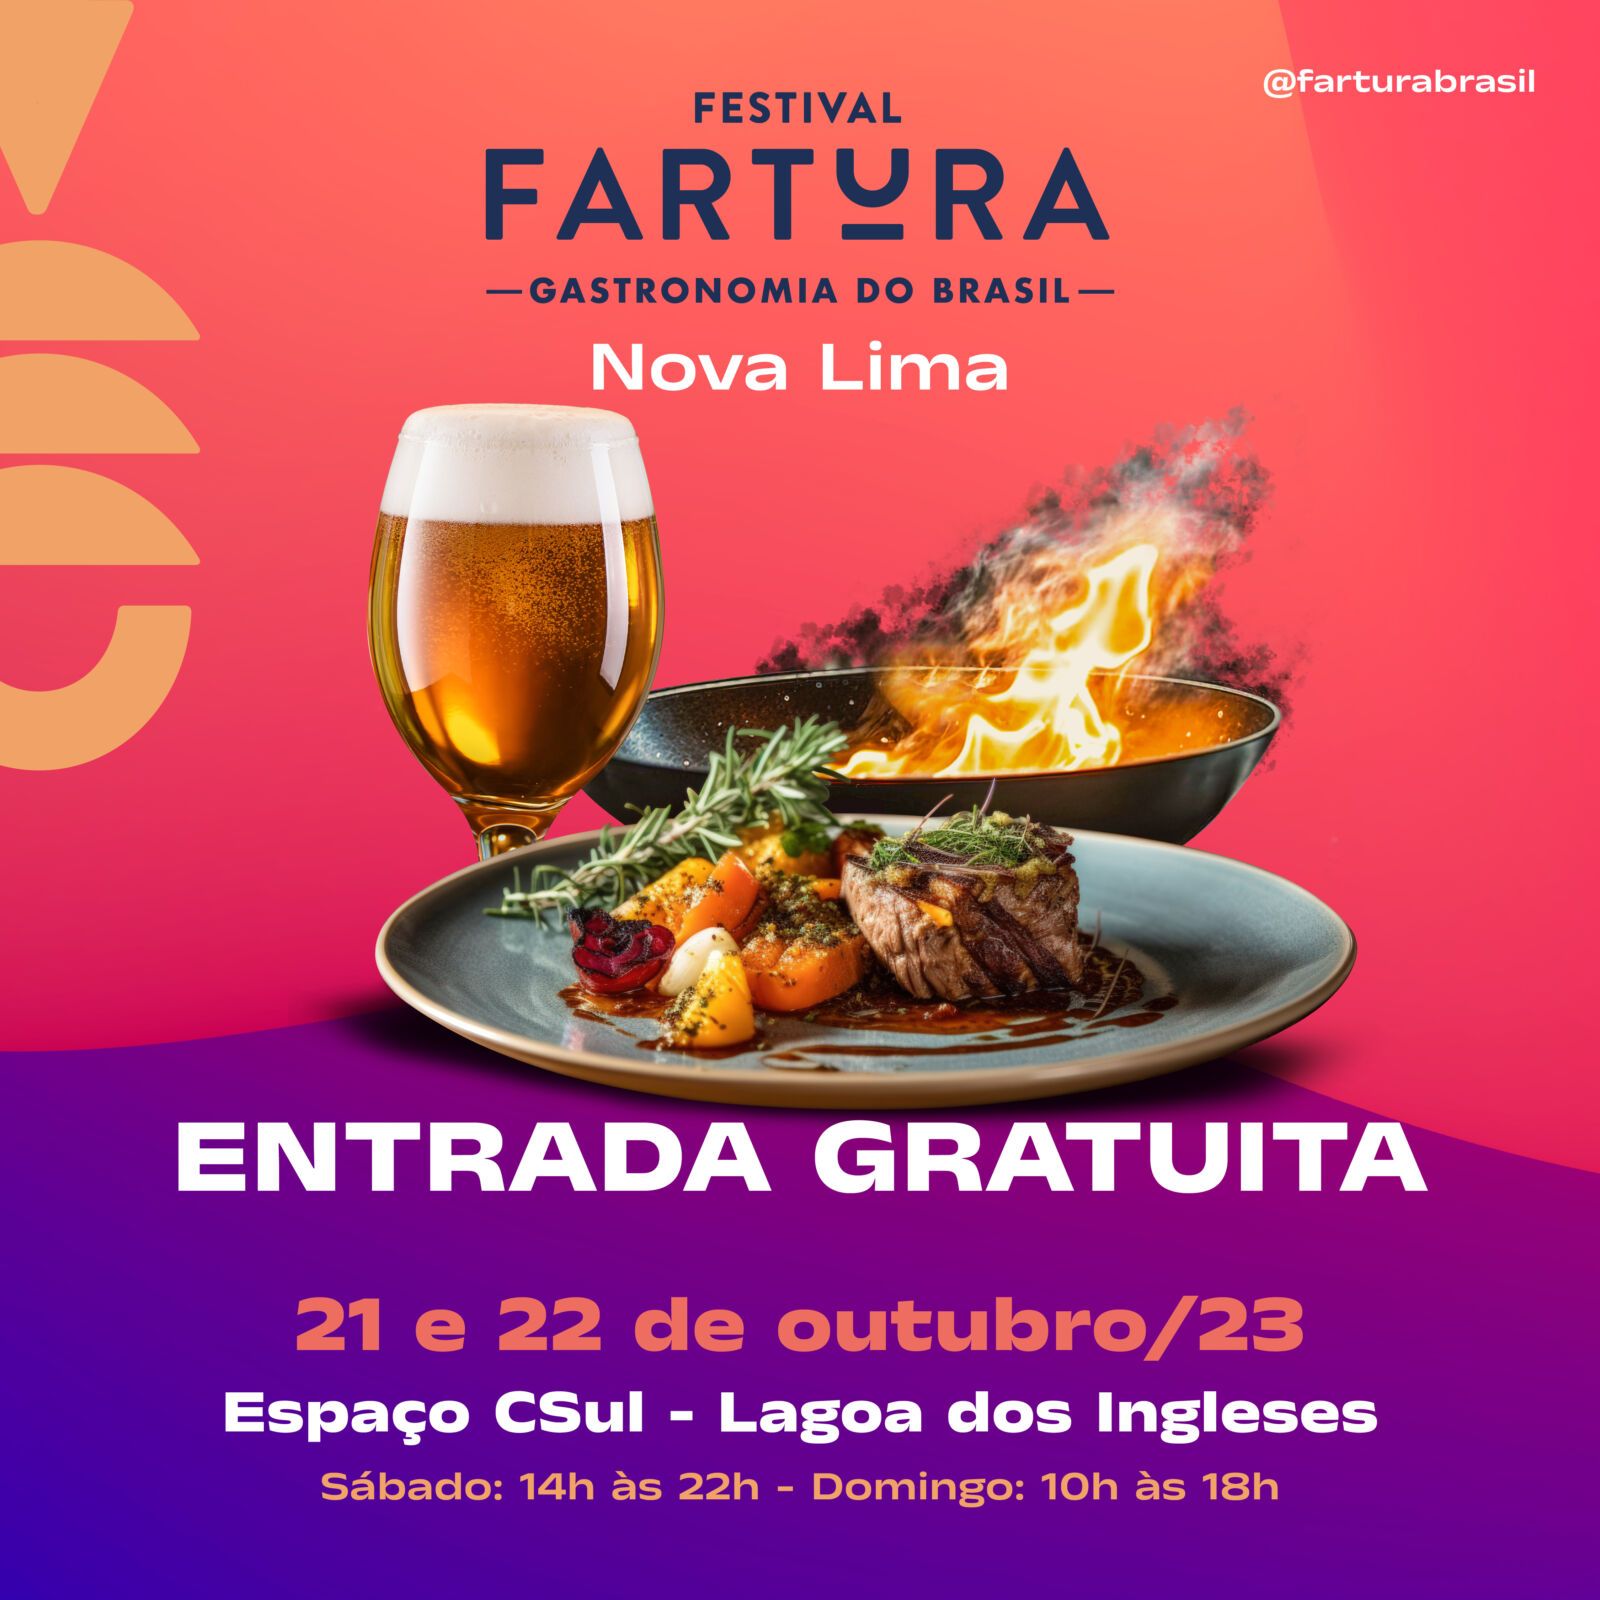 Festival Fartura Gastronomia Nova Lima terá sua primeira edição nos dias 21  e 22 de outubro de 2023 - Fartura Brasil